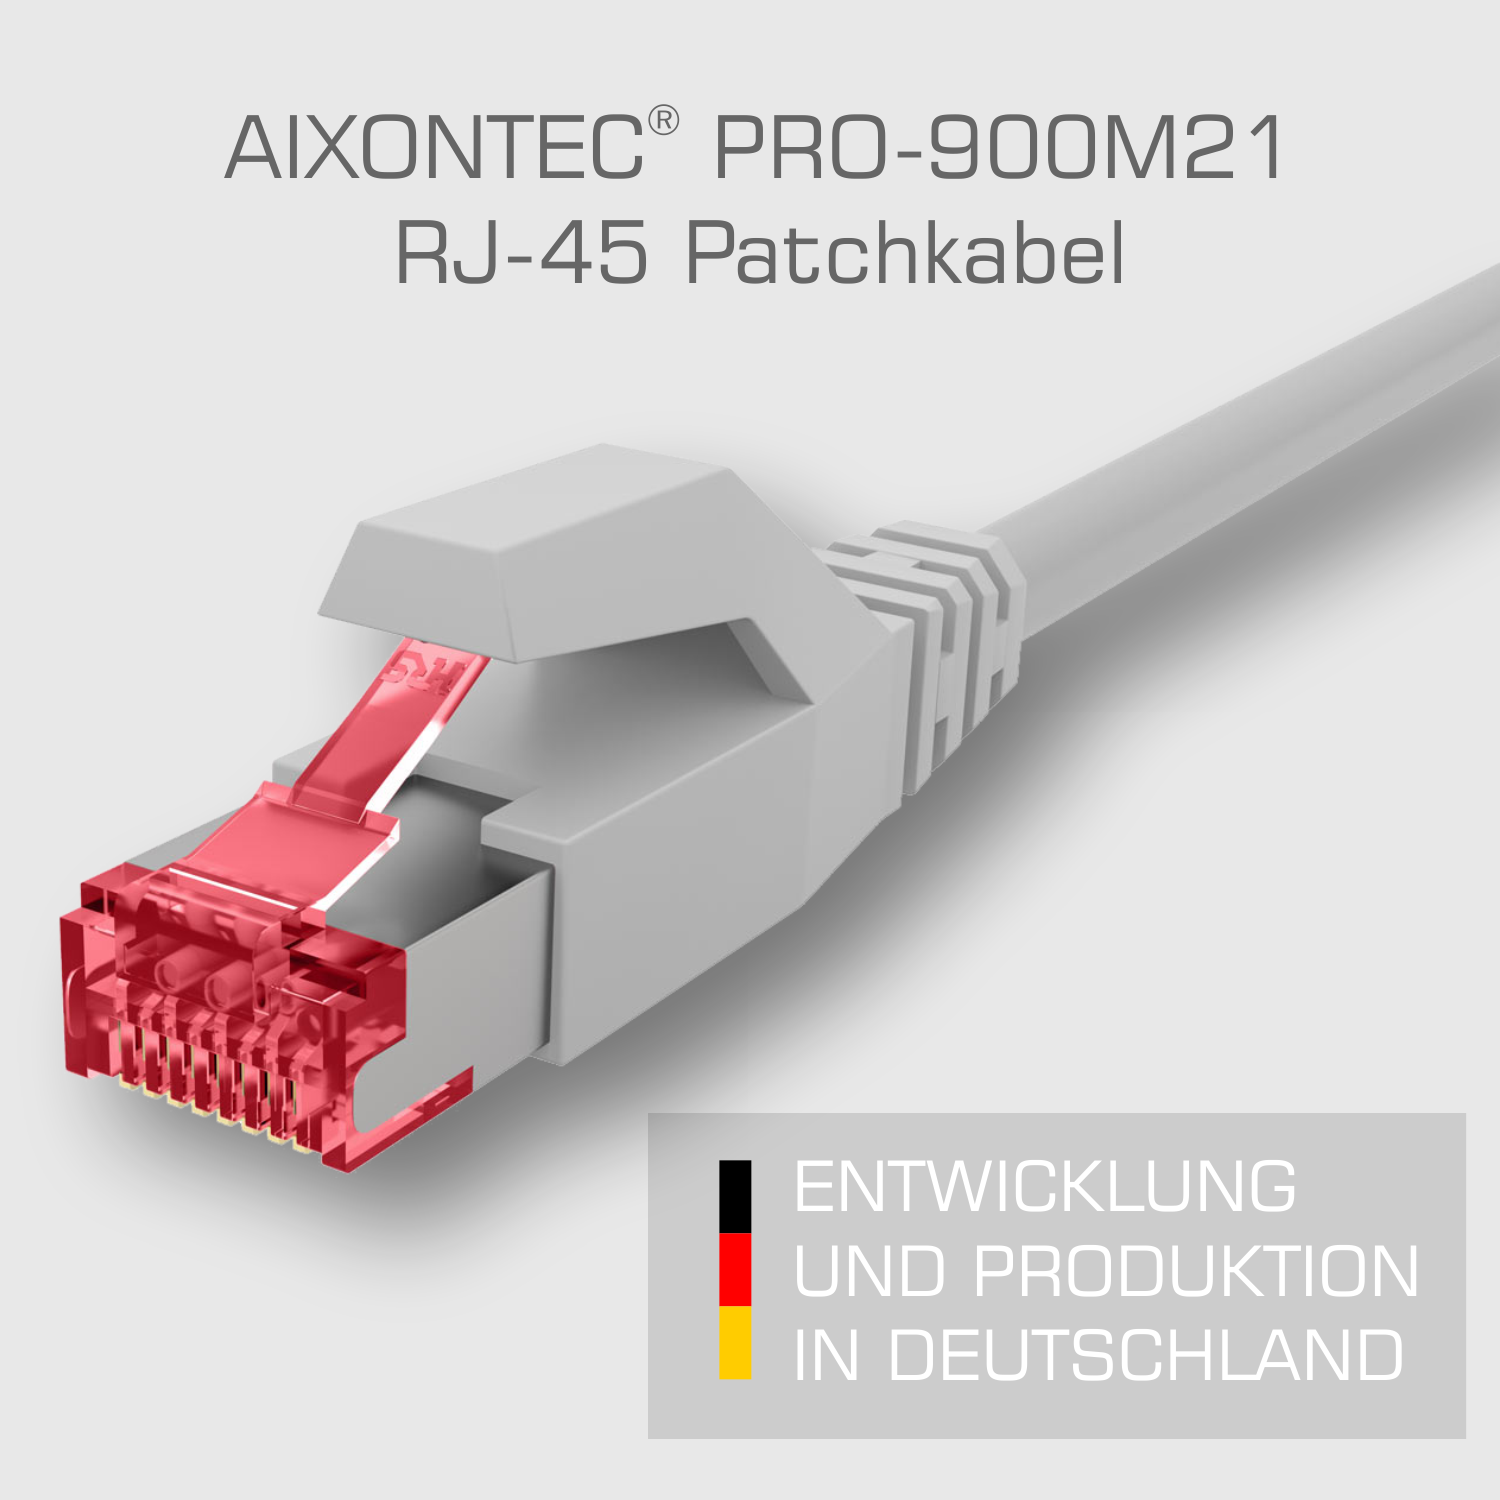 Ethernetkabel Patchkabel m AIXONTEC 8,0m Gigabit, 8,0 Netzwerkkabel, 10 Lankabel RJ45